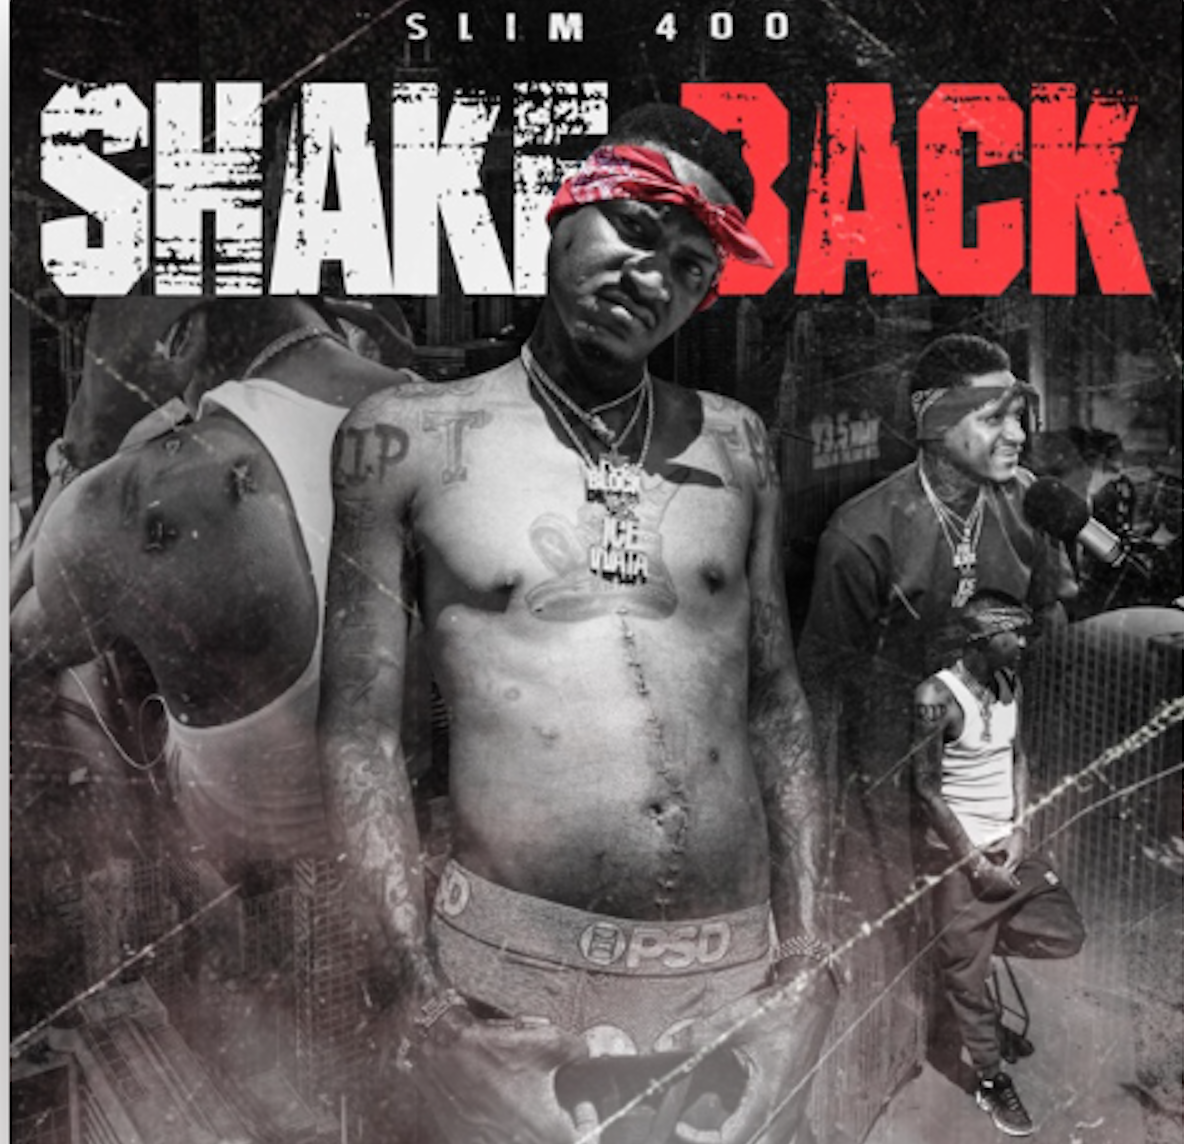 Slim 400 Releases New Album 'Shake Back' - Hip Hop Hundred